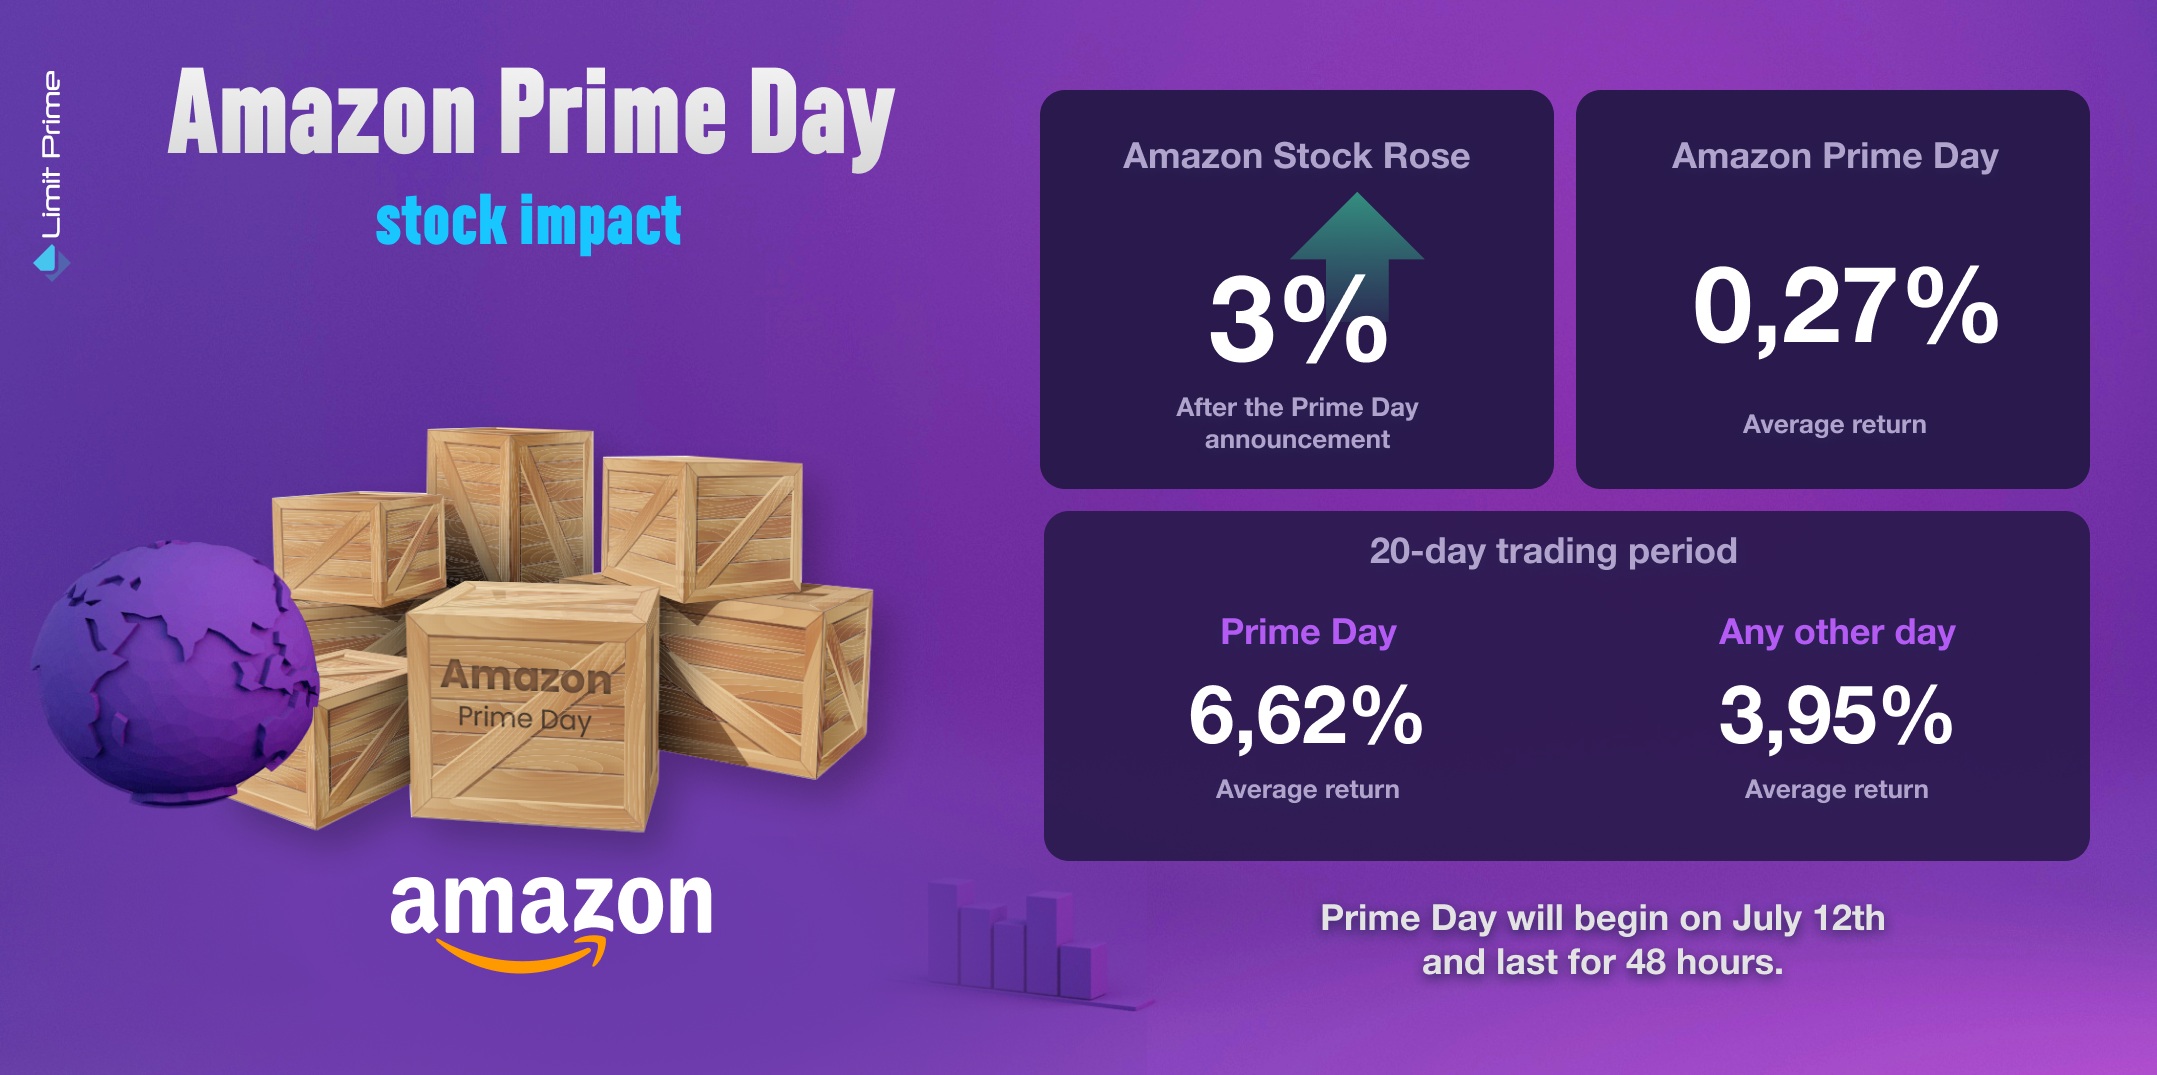 Amazon Prime Day - Stock Impact